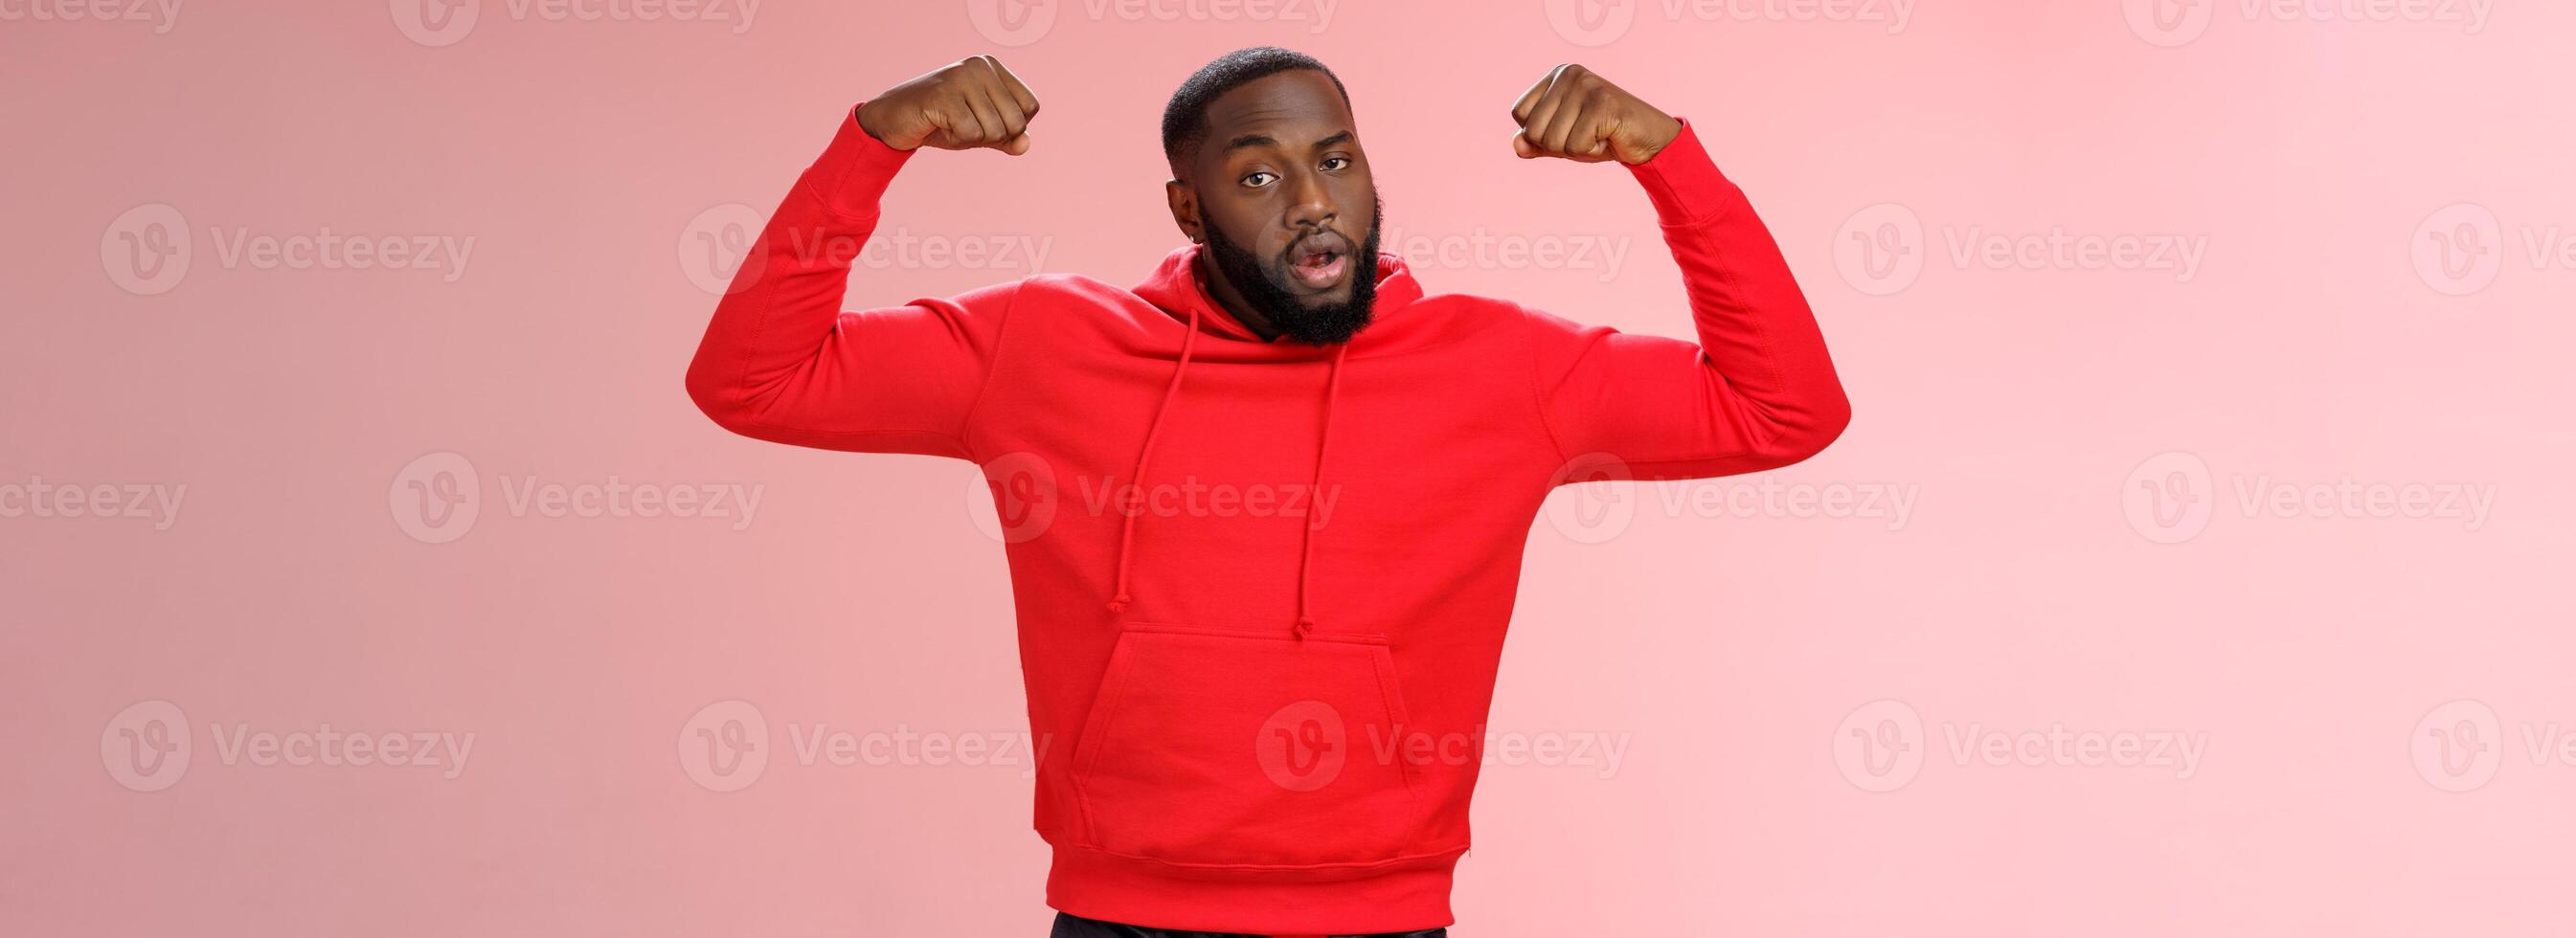 Forte atrevido sério africano americano desportista dentro vermelho moletom com capuz se gabar exibir levantar mãos exercício mostrar grande músculos bíceps, em pé confiante Rosa fundo foto